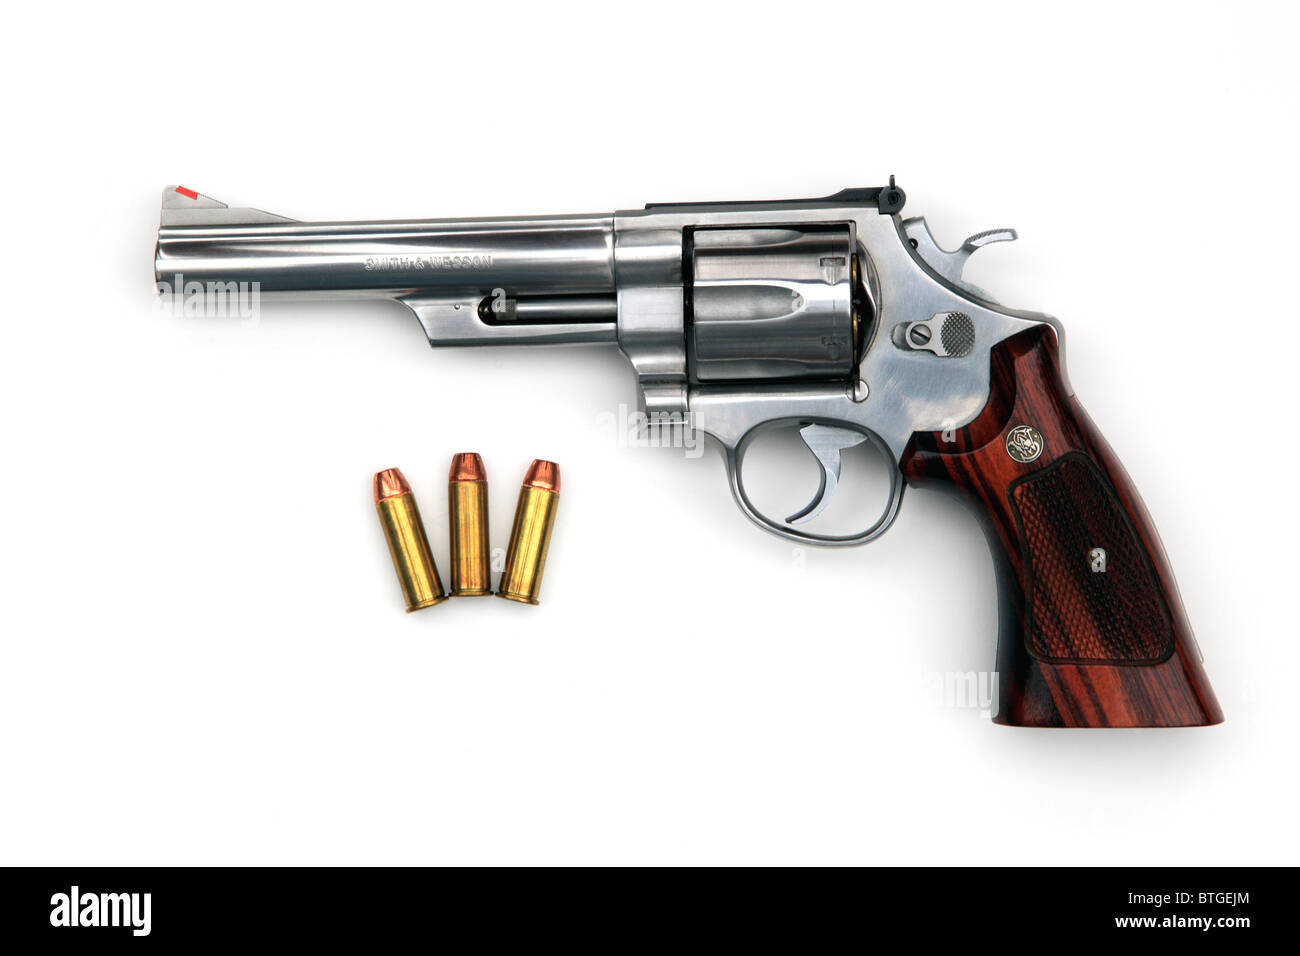 Eine.44 Magnum Revolver, die gleiche Art wie in den Filmen "Dirty Harry" verwendet, außer diesein aus rostfreiem Stahl hergestellt wird. Stockfoto